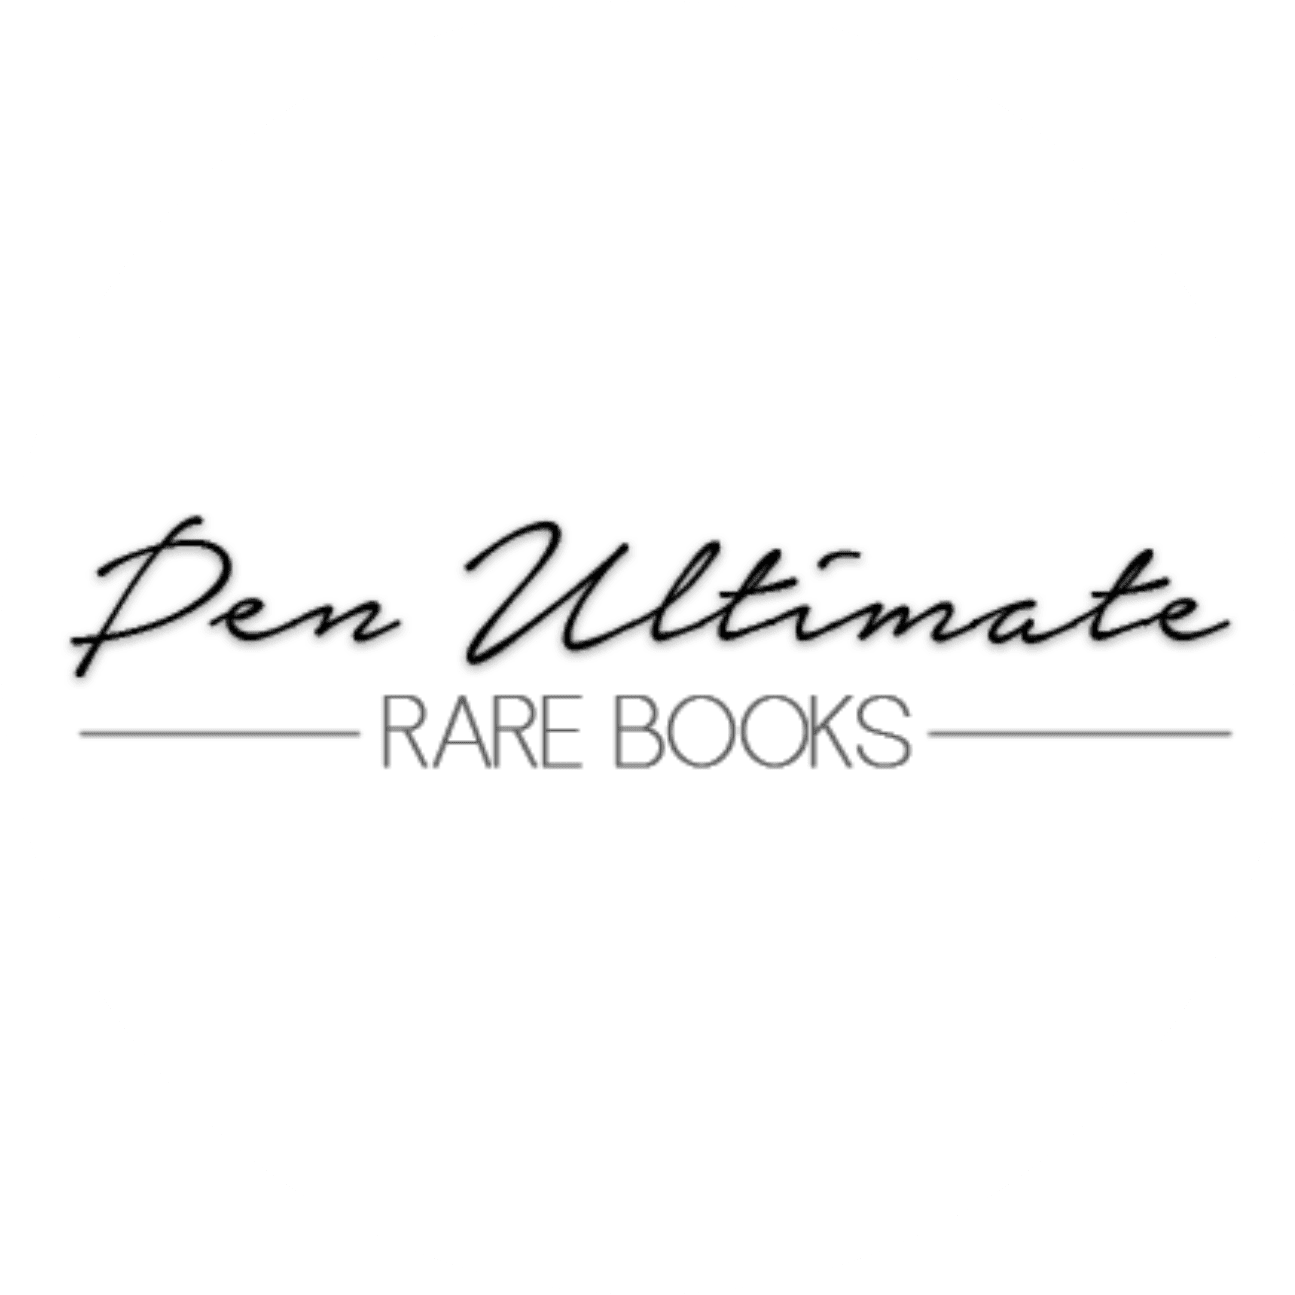 Pen Ultimate Rare Books